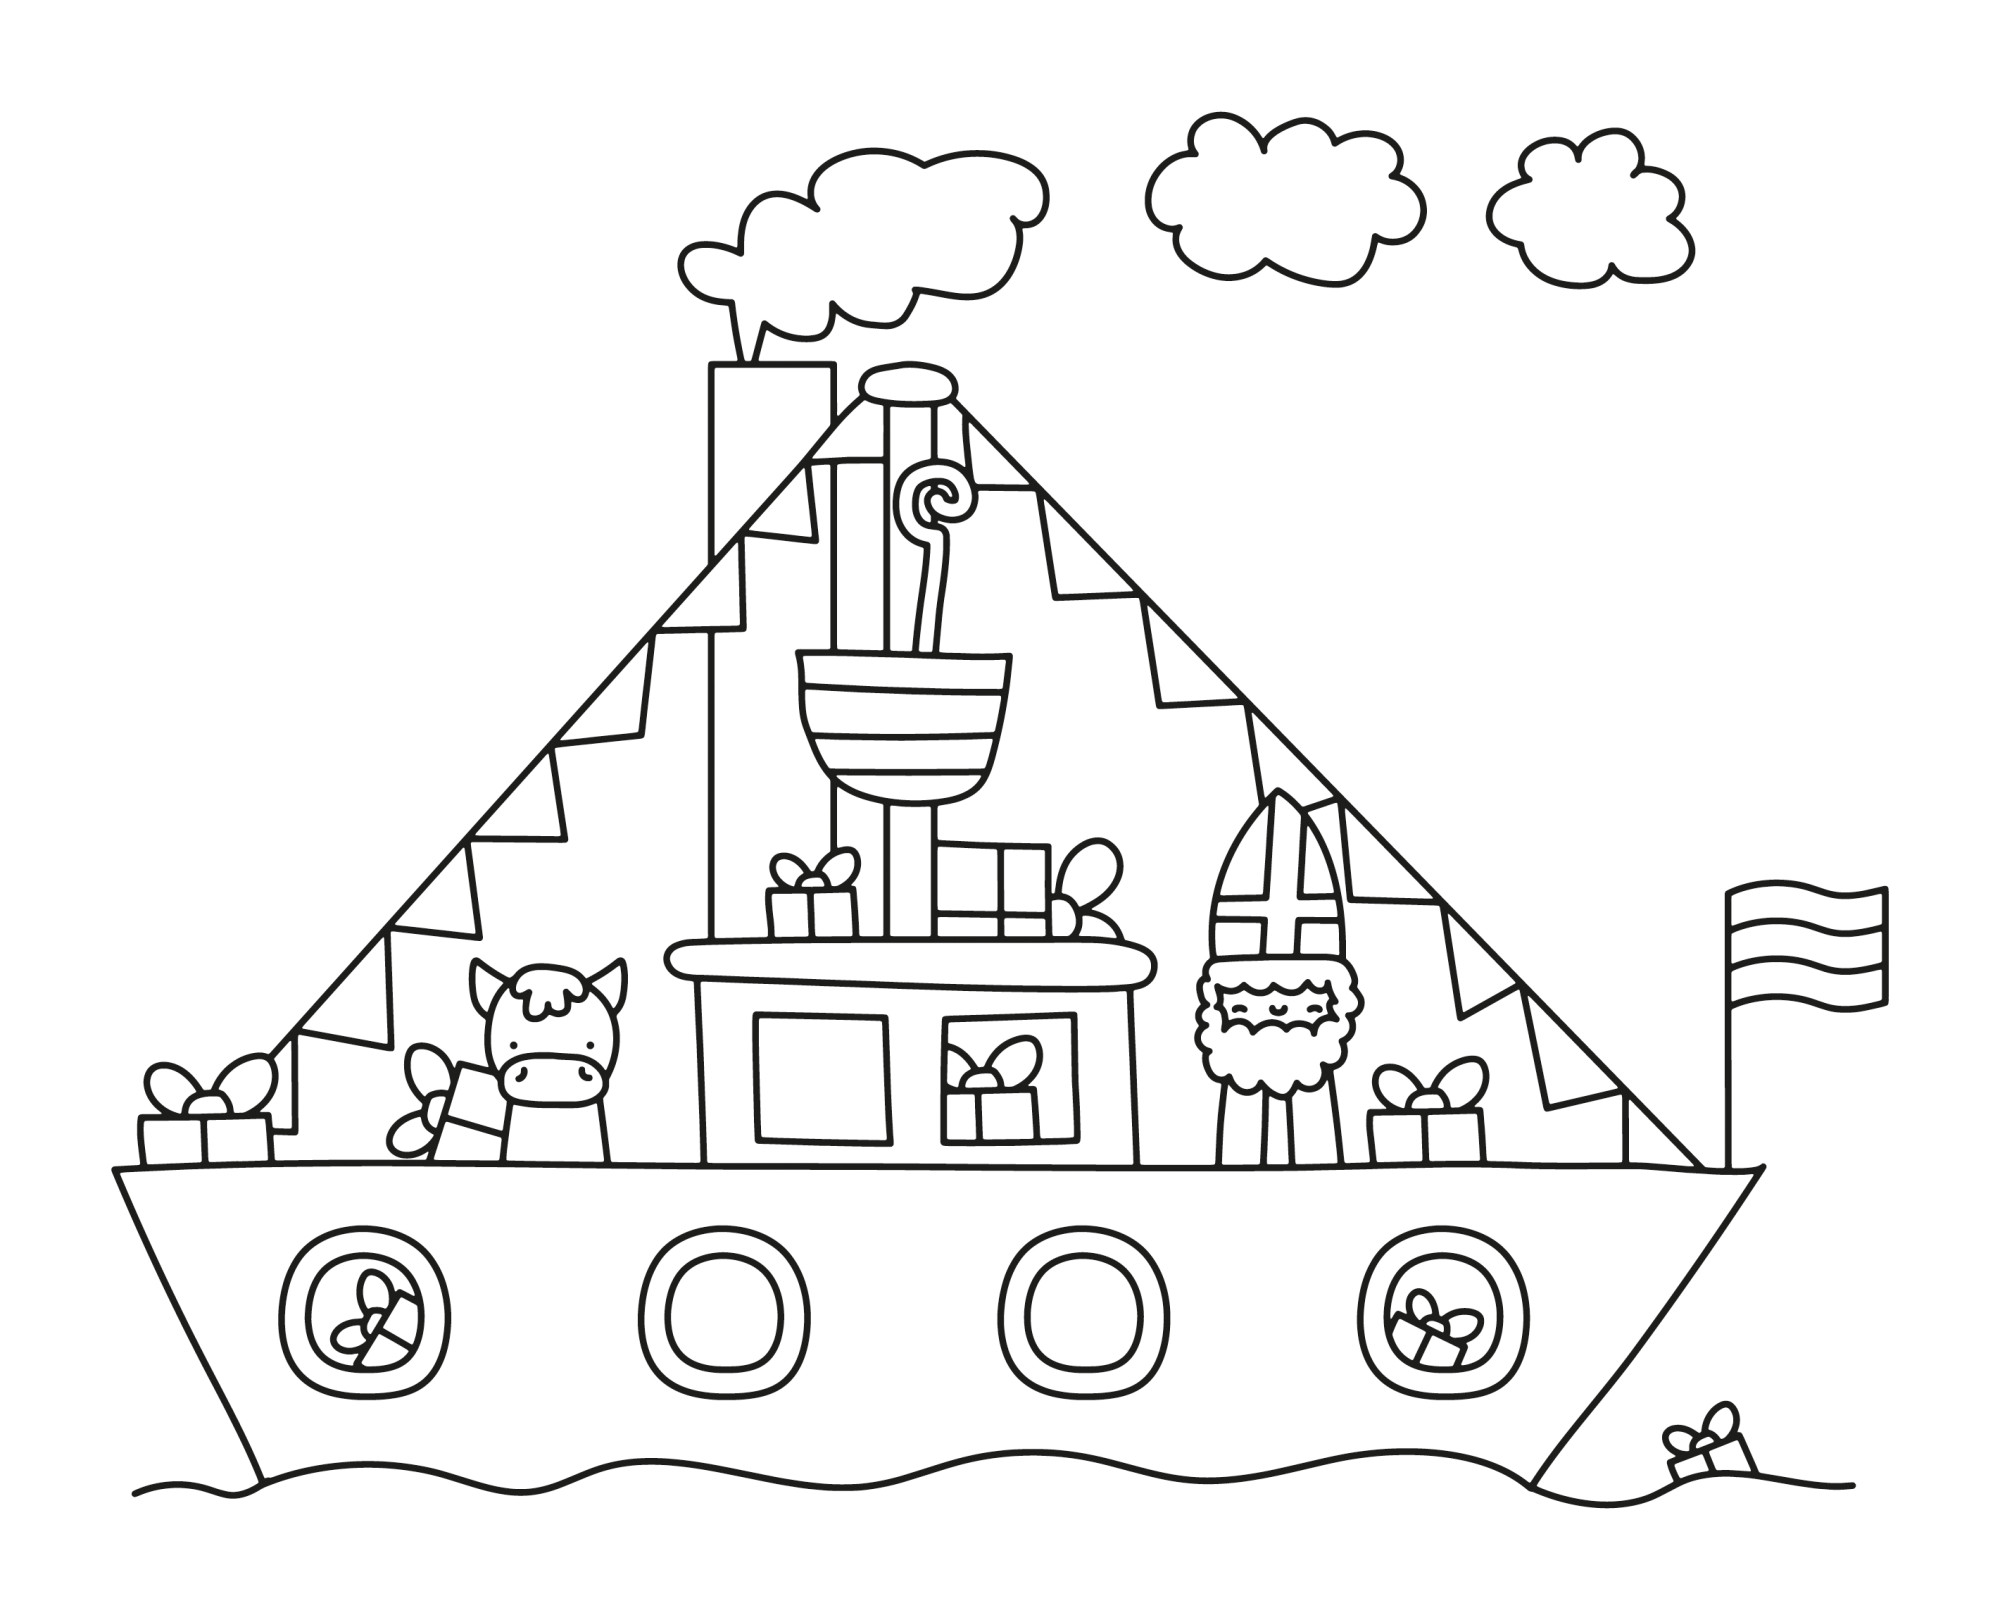 Раскраска для детей: корабль пароход с животными на борту